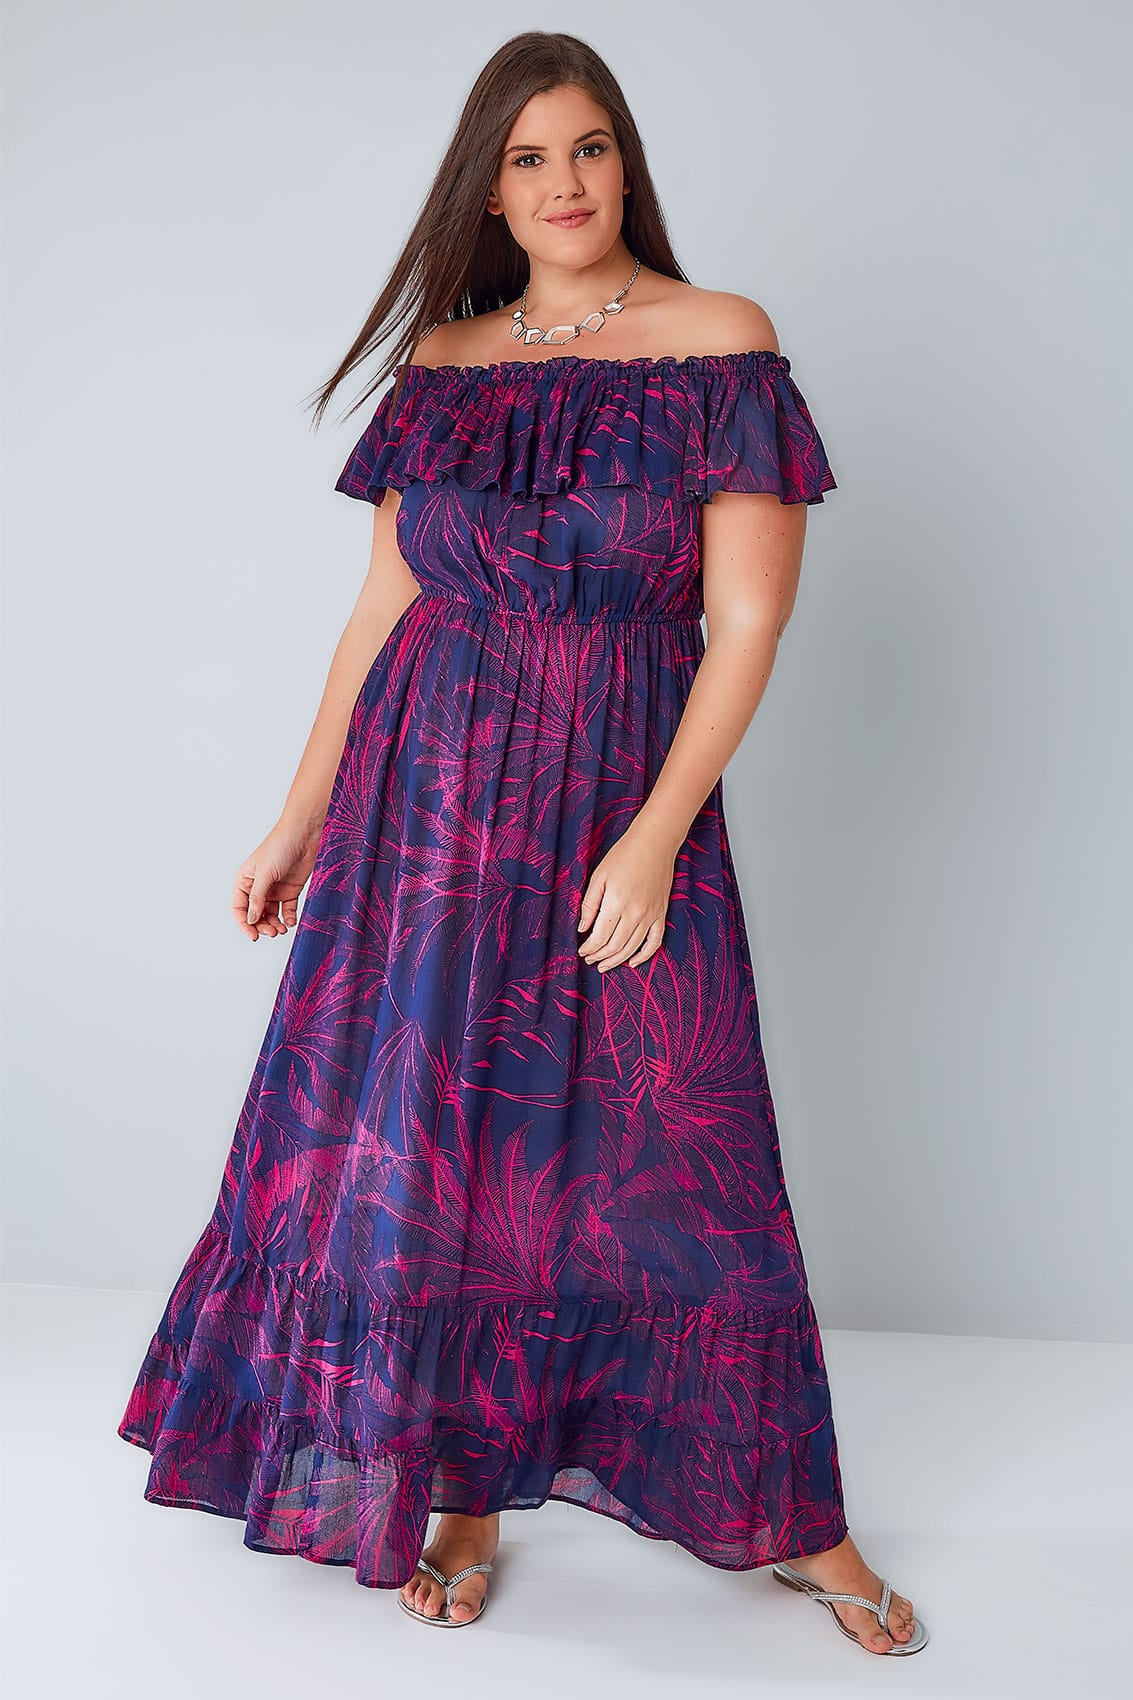 Purple dress images